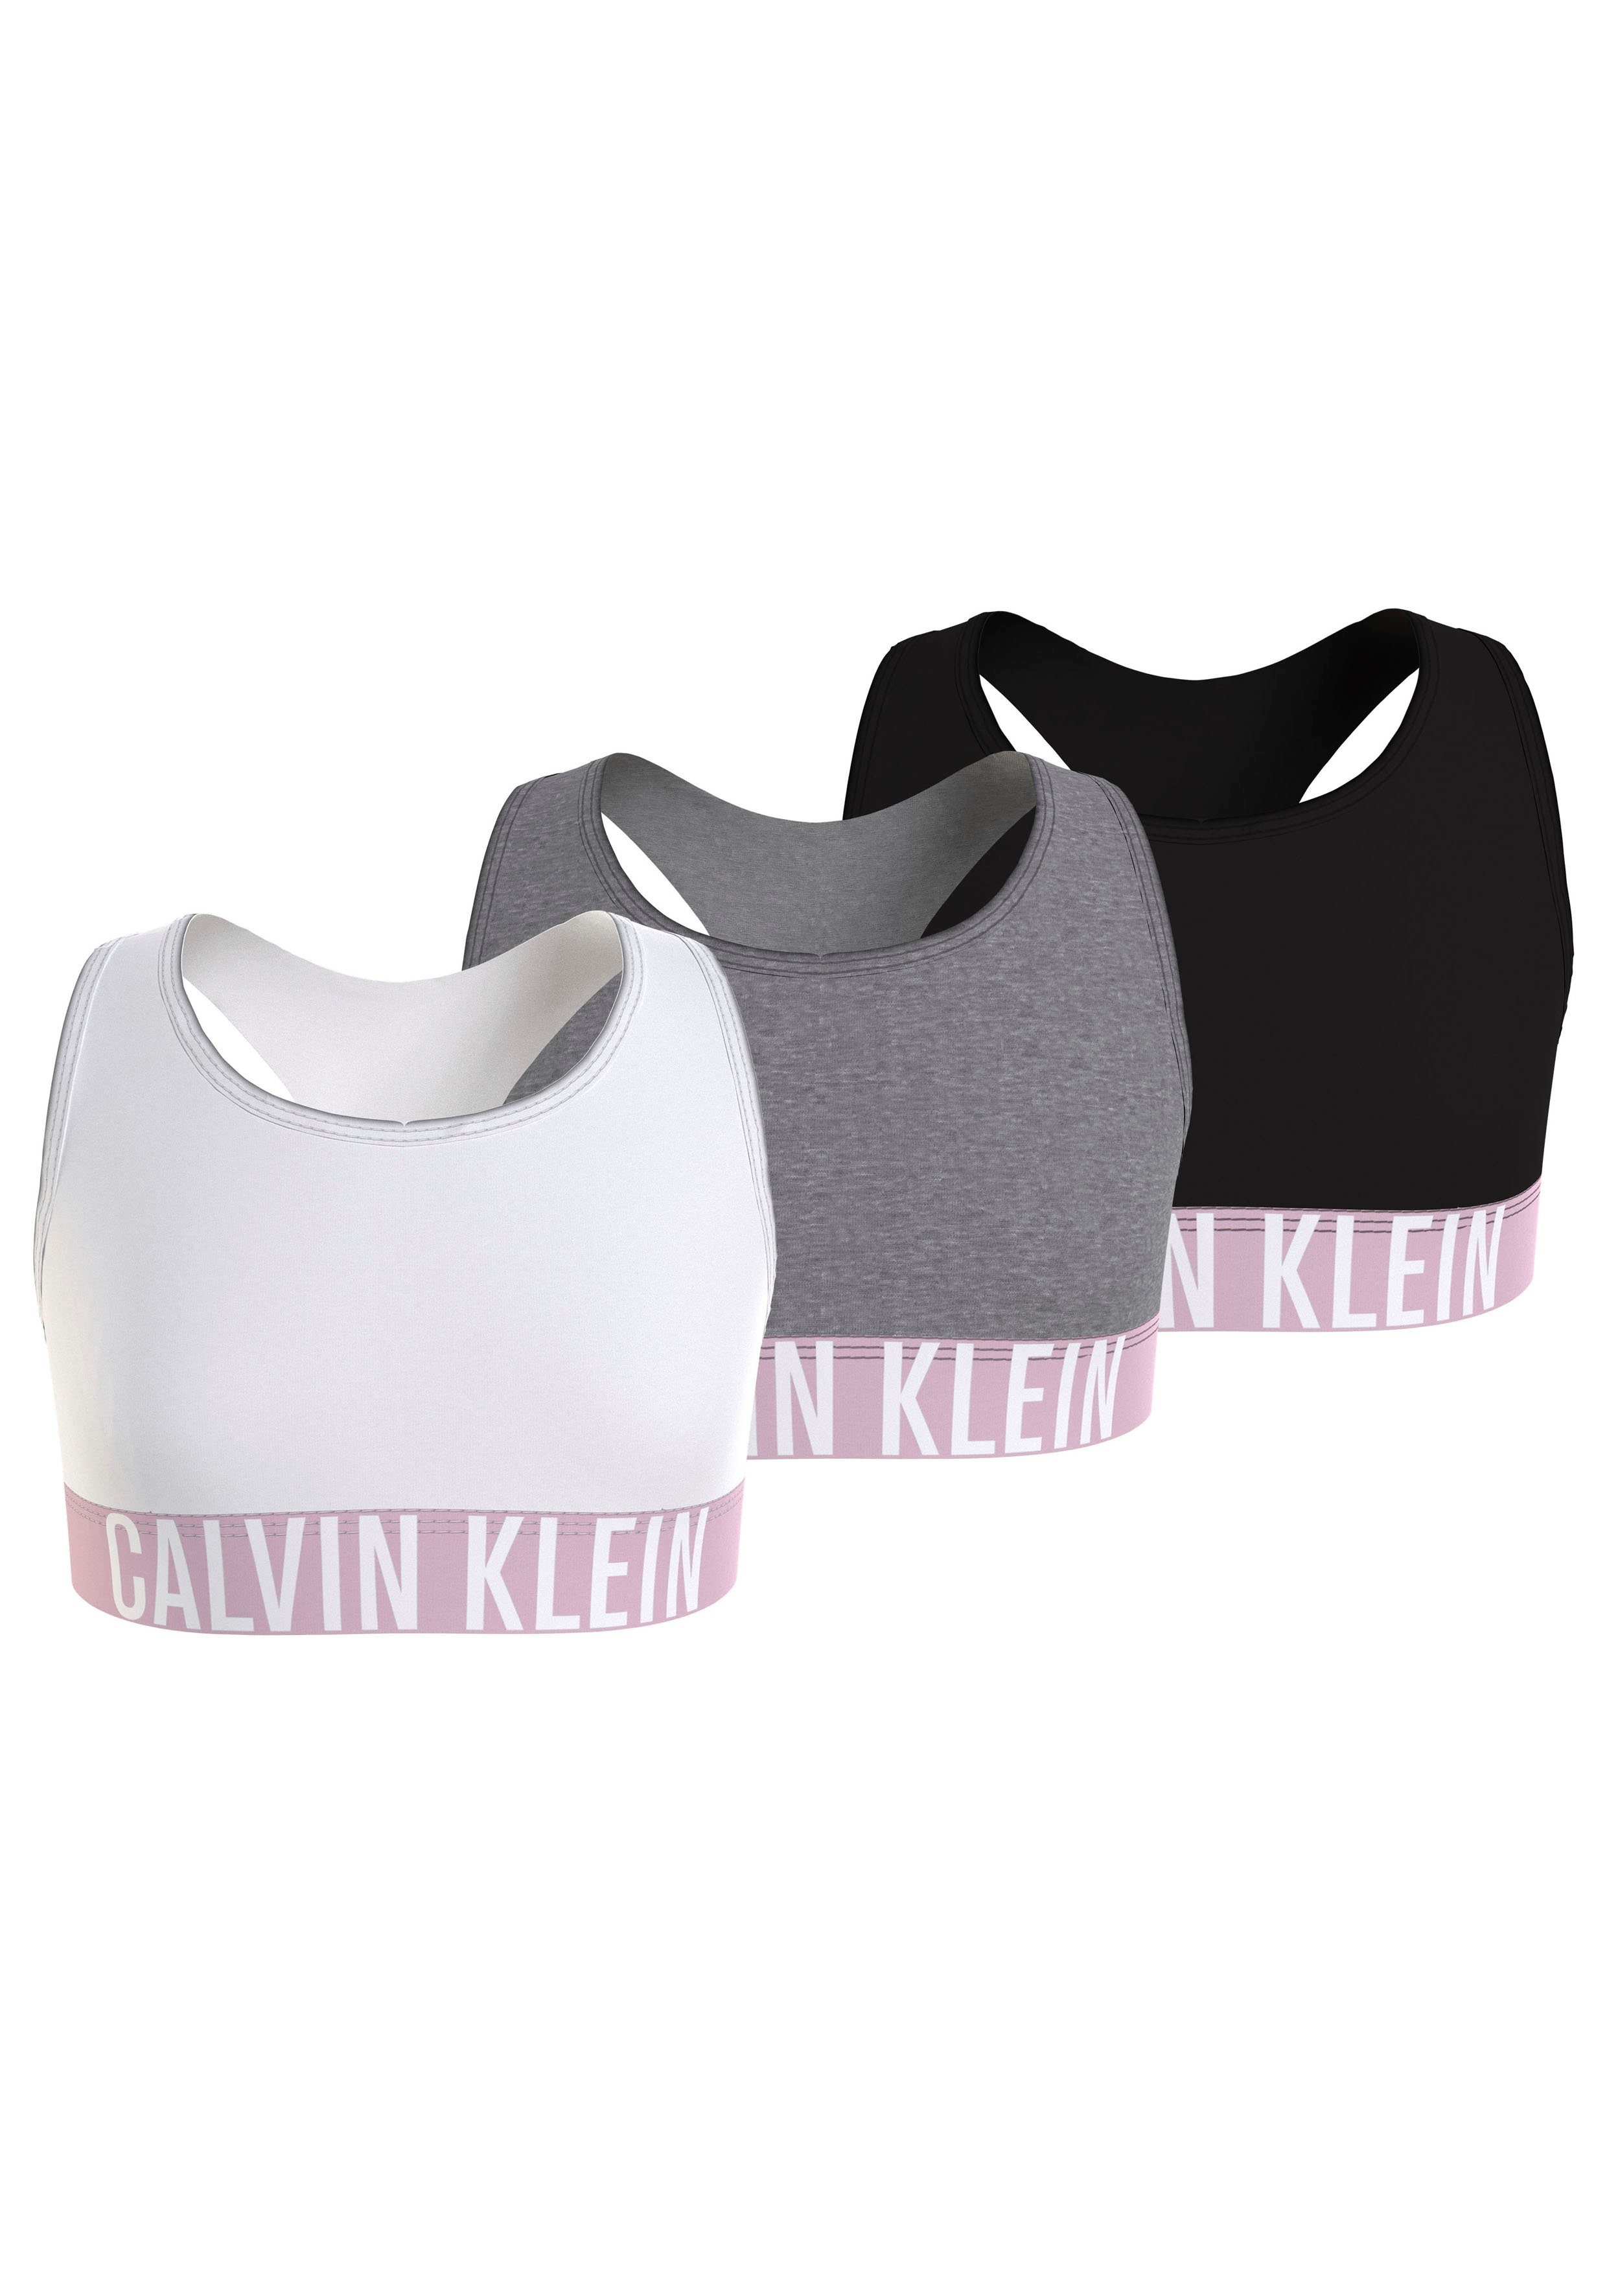 Calvin Klein Underwear am Bund mit Bralette BRALETTE Klein 3er-Pack) Schriftzug (Packung, 3PK Calvin